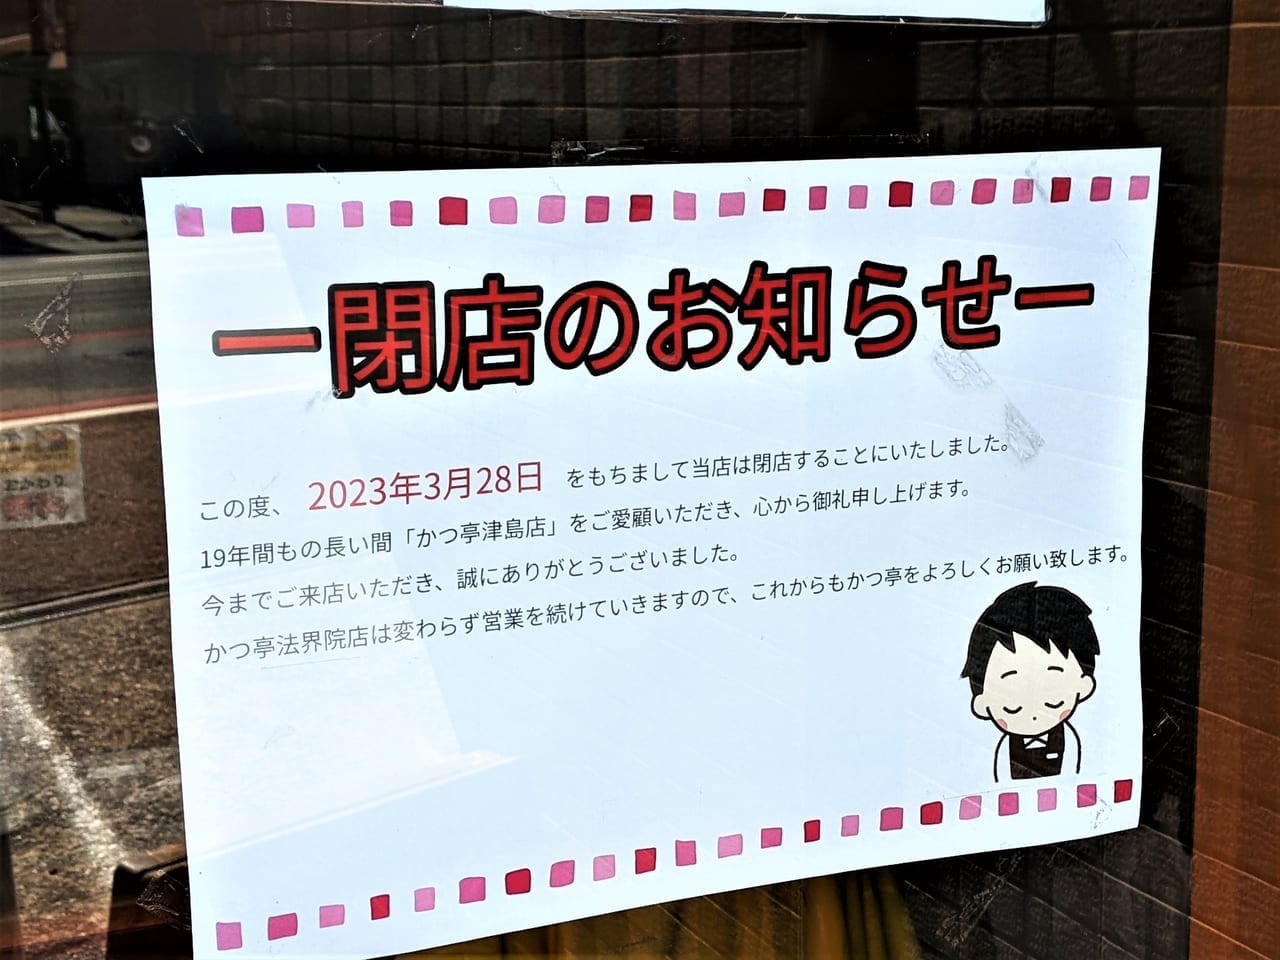 「かつ亭 津島店」の閉店のお知らせ